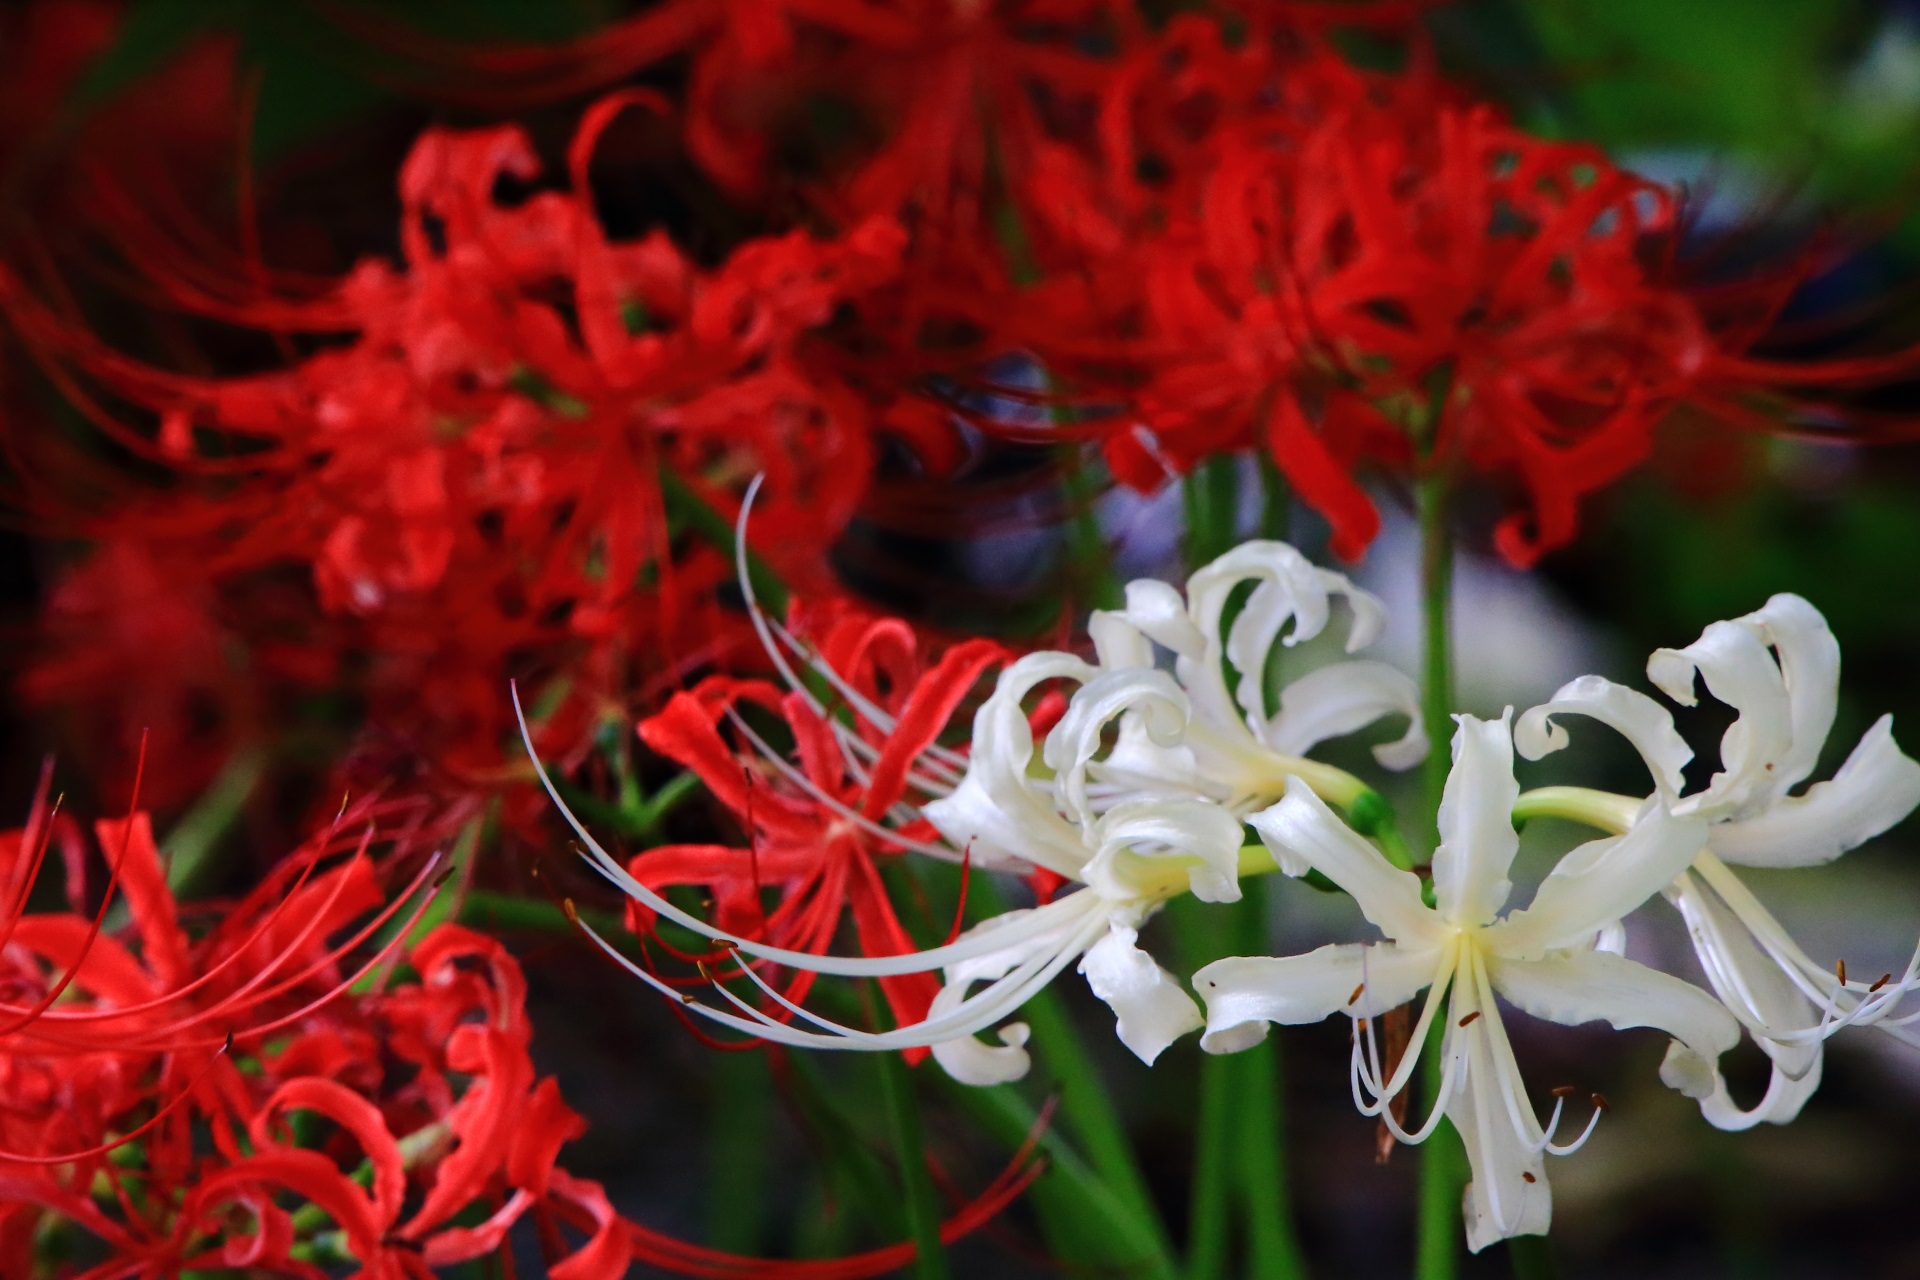 妙蓮寺の絶妙な色合いの紅白の彼岸花